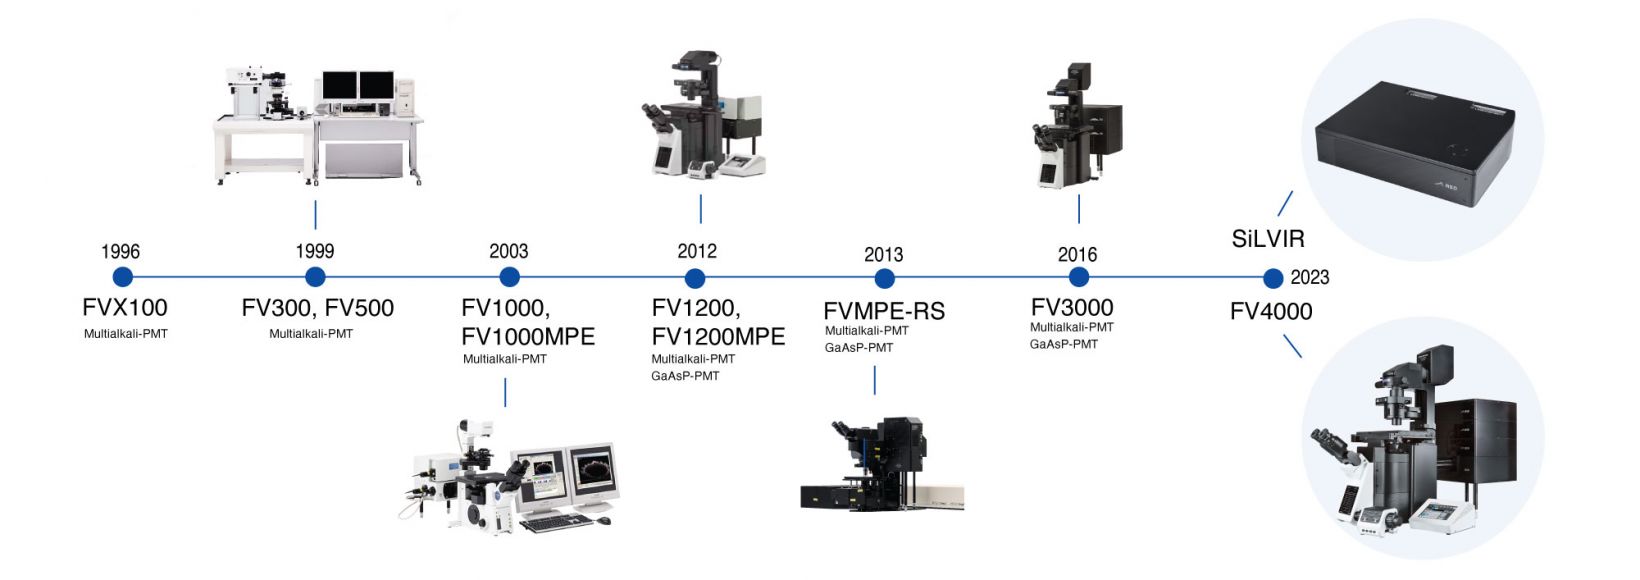 Uma linha do tempo com os avanços da microscopia confocal, inicialmente na Olympus, e então na Evident, culminando no microscópio confocal a laser FV4000.